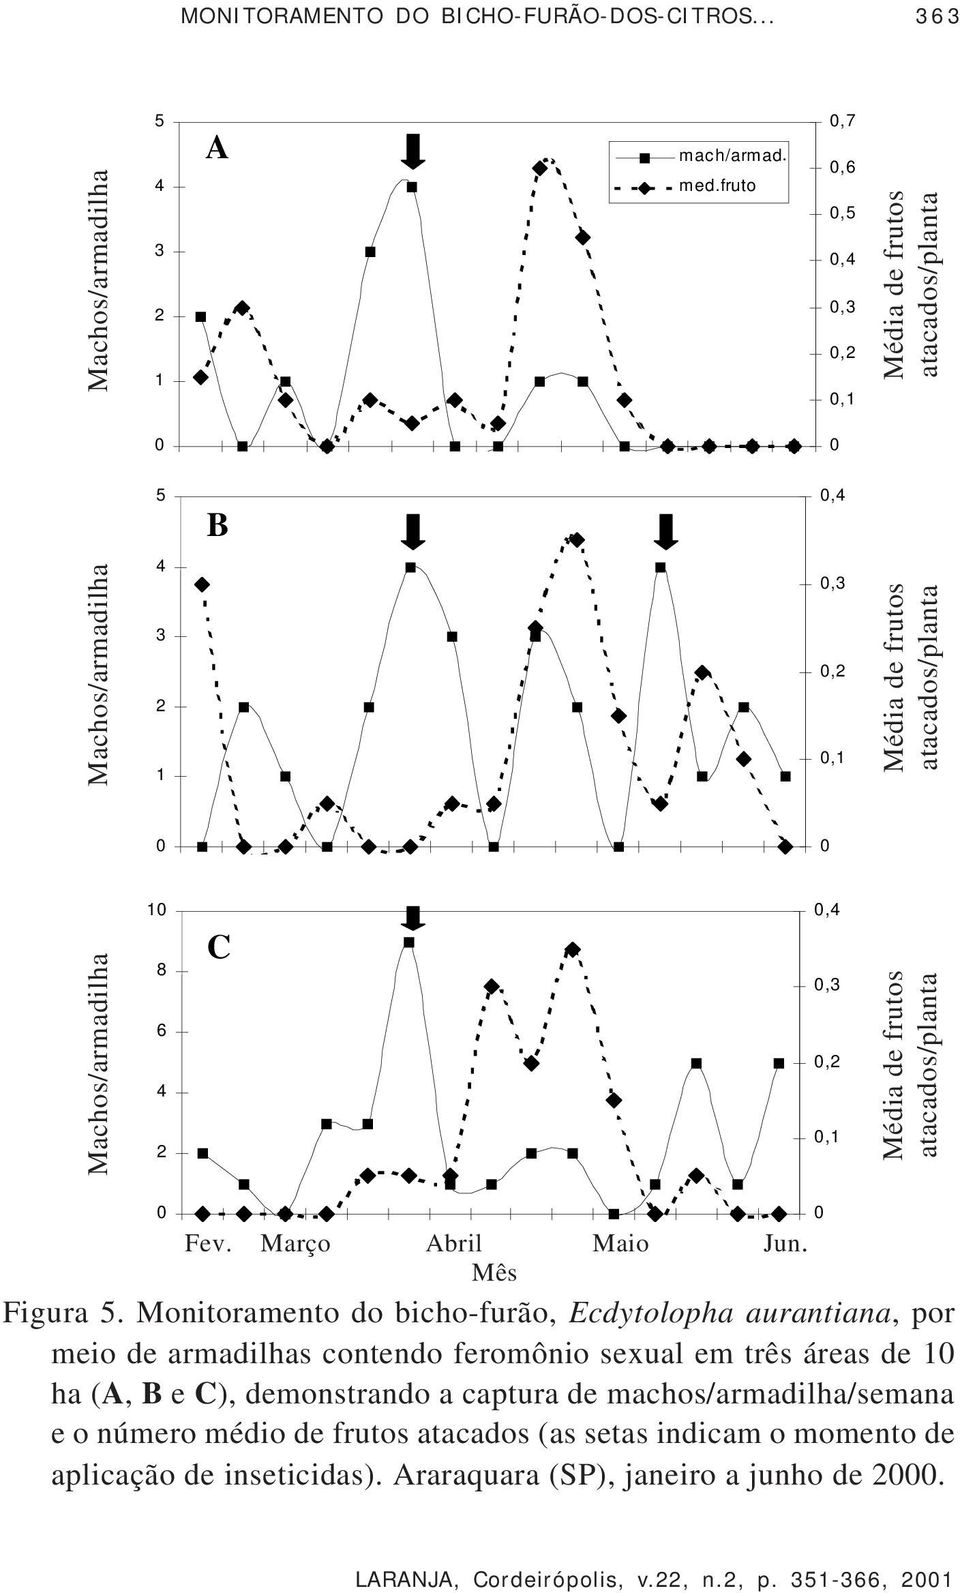 Monitoramento do bicho-furão, Ecdytolopha aurantiana, por meio de armadilhas contendo feromônio sexual em três áreas de 1 ha (A, B e C), demonstrando a captura de machos/armadilha/semana e o número